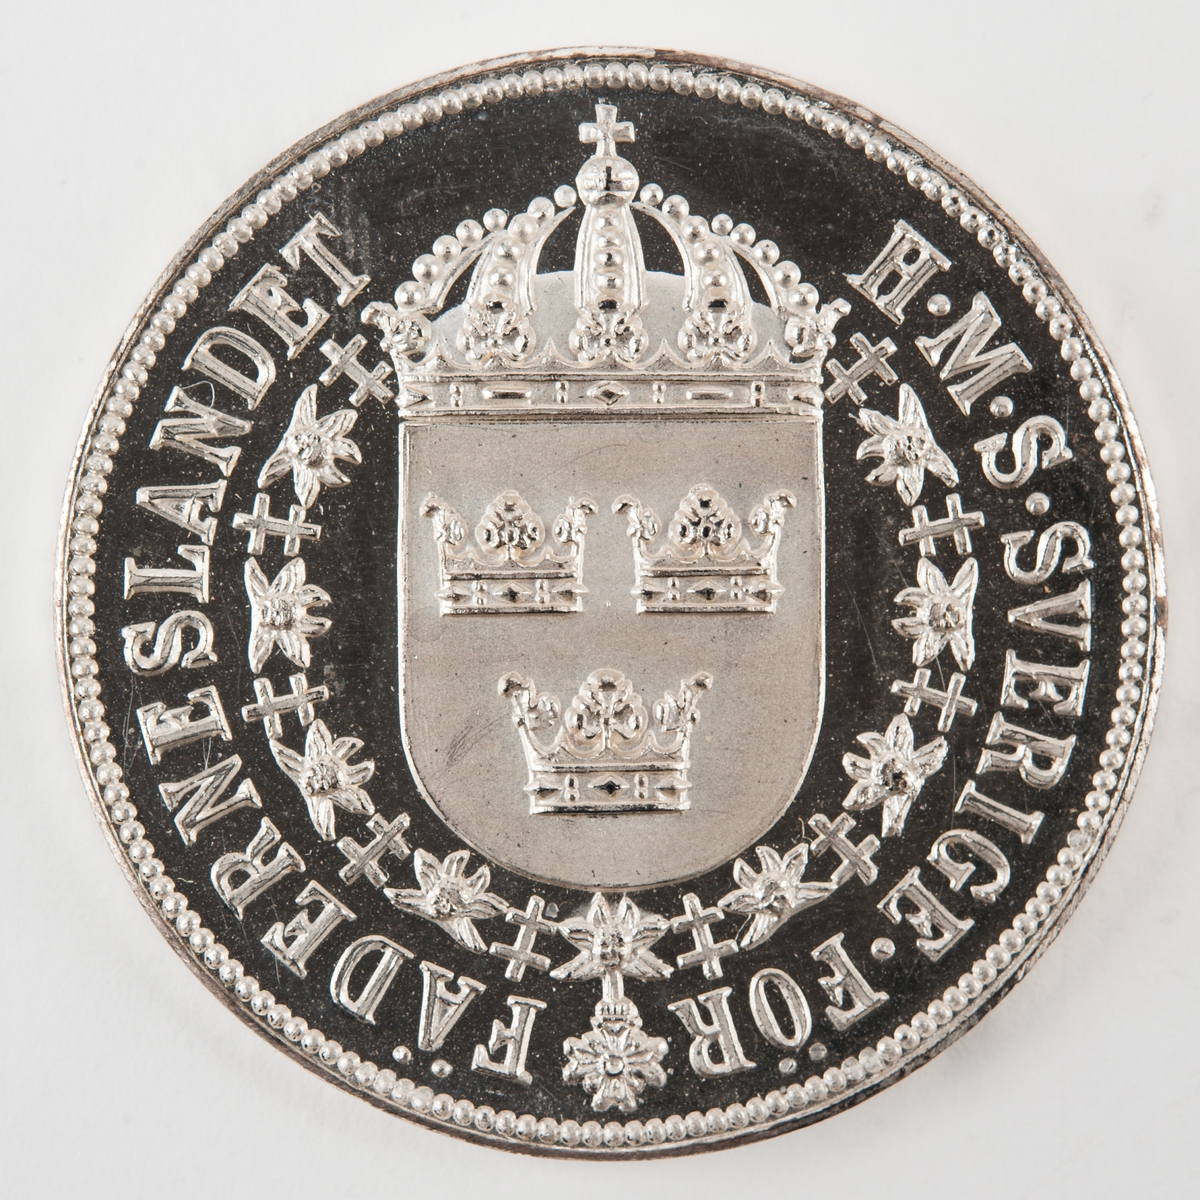 Åtsida: krönt sköld med tre kronor omgiven av serafimerkedjan.